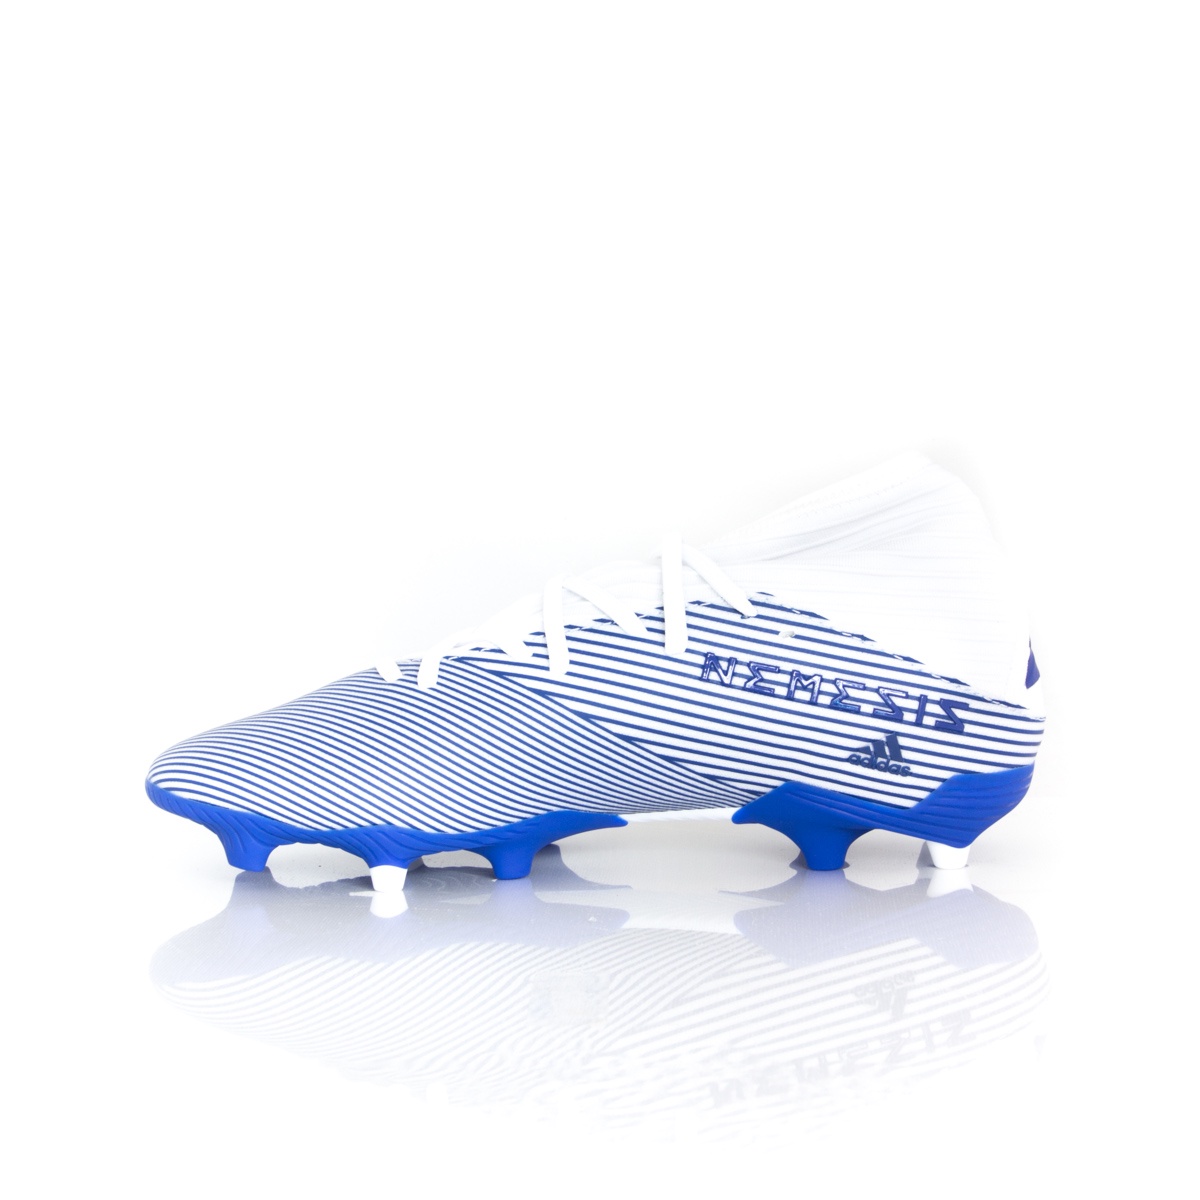 adidas nemeziz 19.3 blue and white